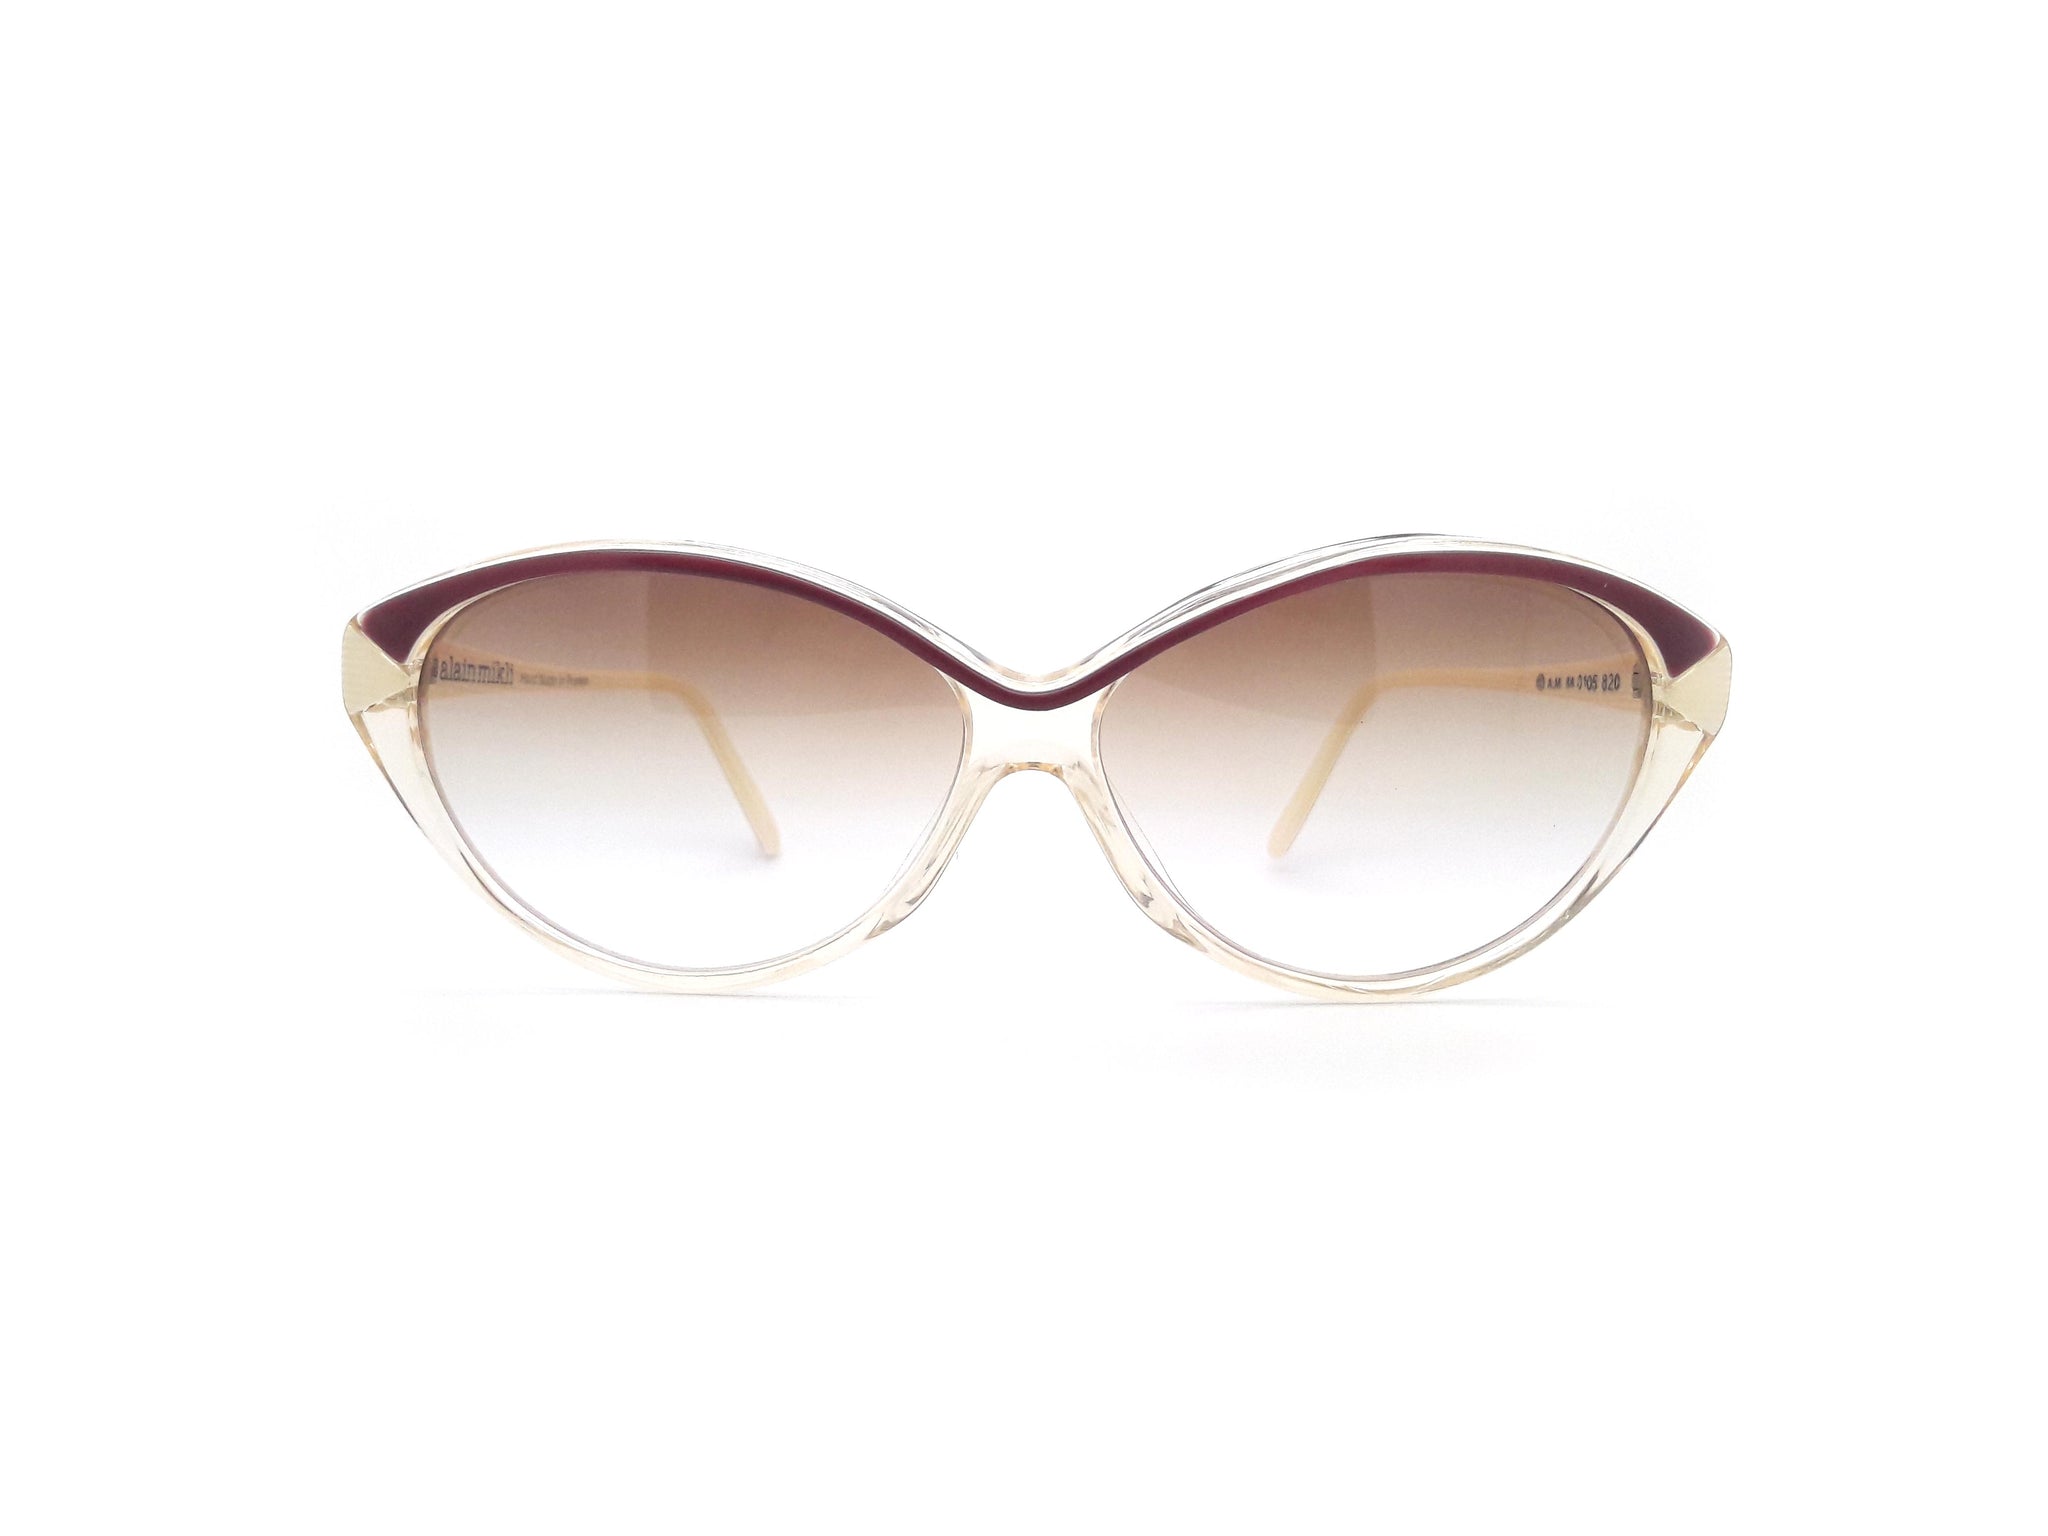 Alain Mikli Vintage Sunglasses, Eyeglasses and Frames – Ed & Sarna ...